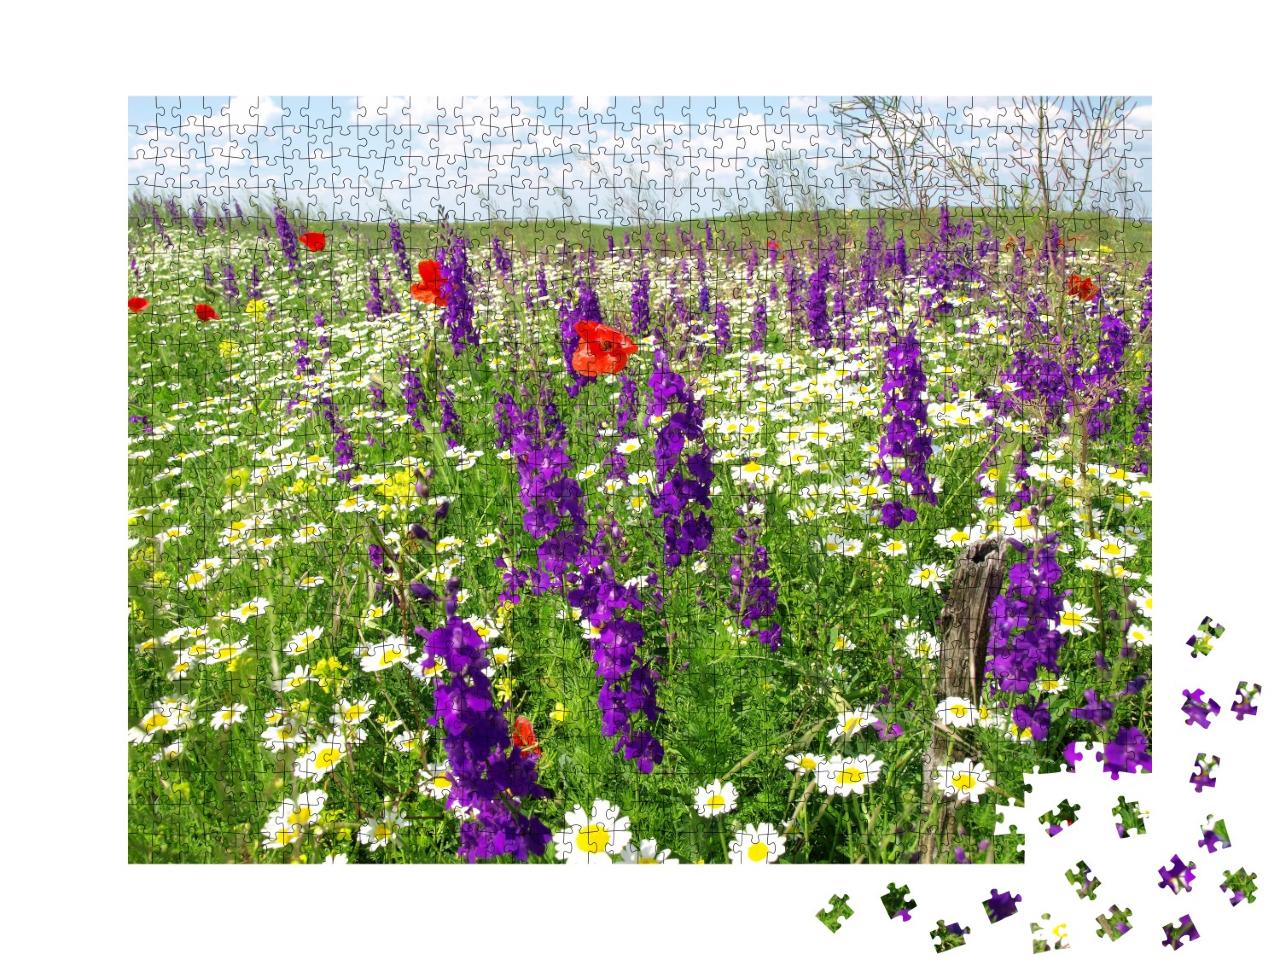 Puzzle de 1000 pièces « Fleurs sauvages d'été »